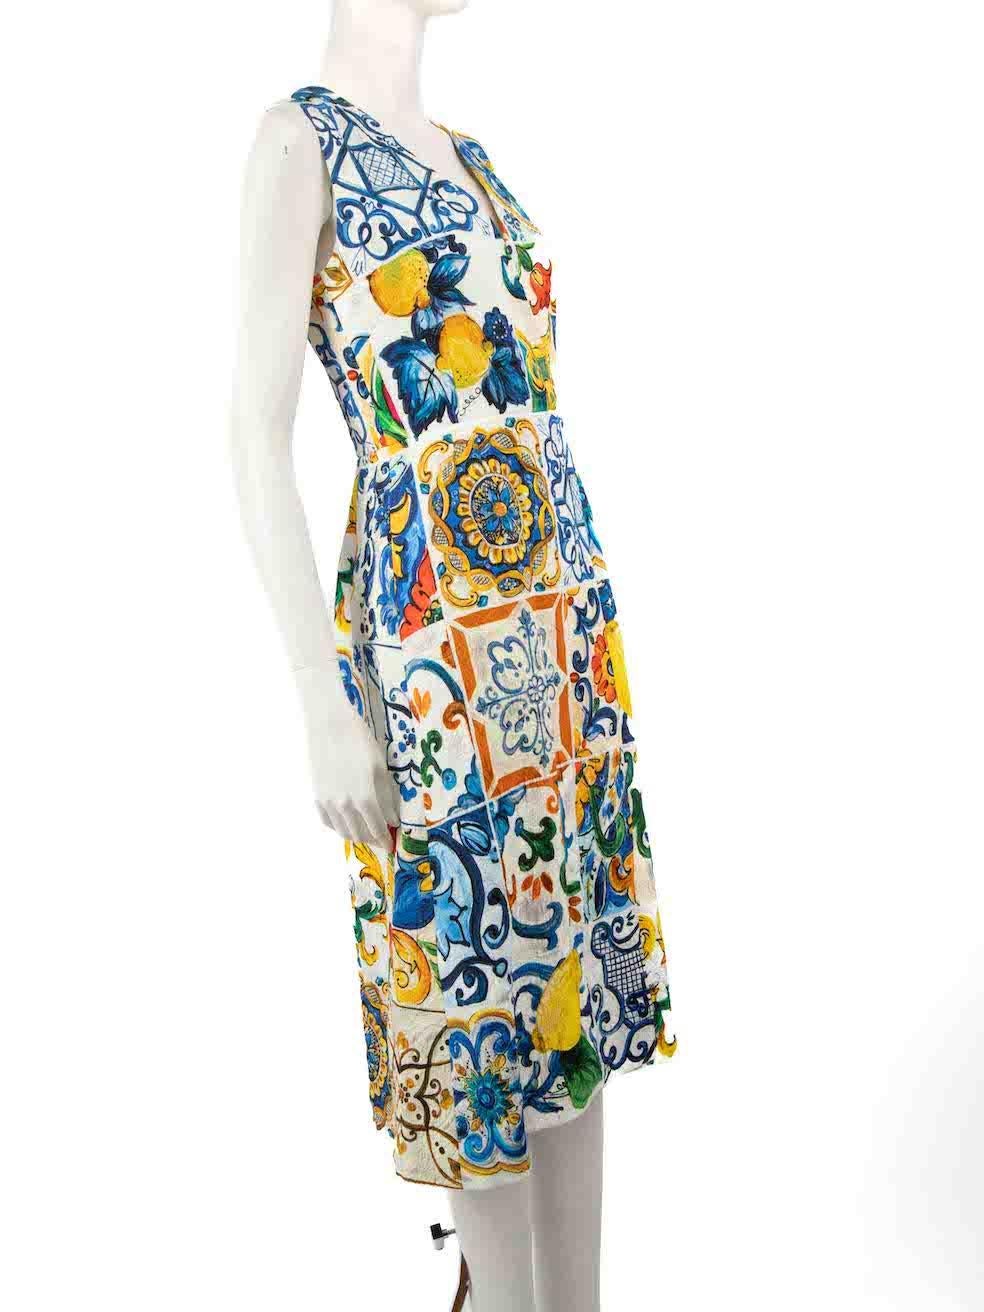 CONDITION ist nie getragen, mit Tags. Keine sichtbaren Abnutzungserscheinungen am Kleid sind bei diesem neuen Dolce & Gabbana Designer-Wiederverkaufsartikel erkennbar.
 
 
 
 Einzelheiten
 
 
 Mehrfarbig
 
 Baumwolle
 
 Midikleid
 
